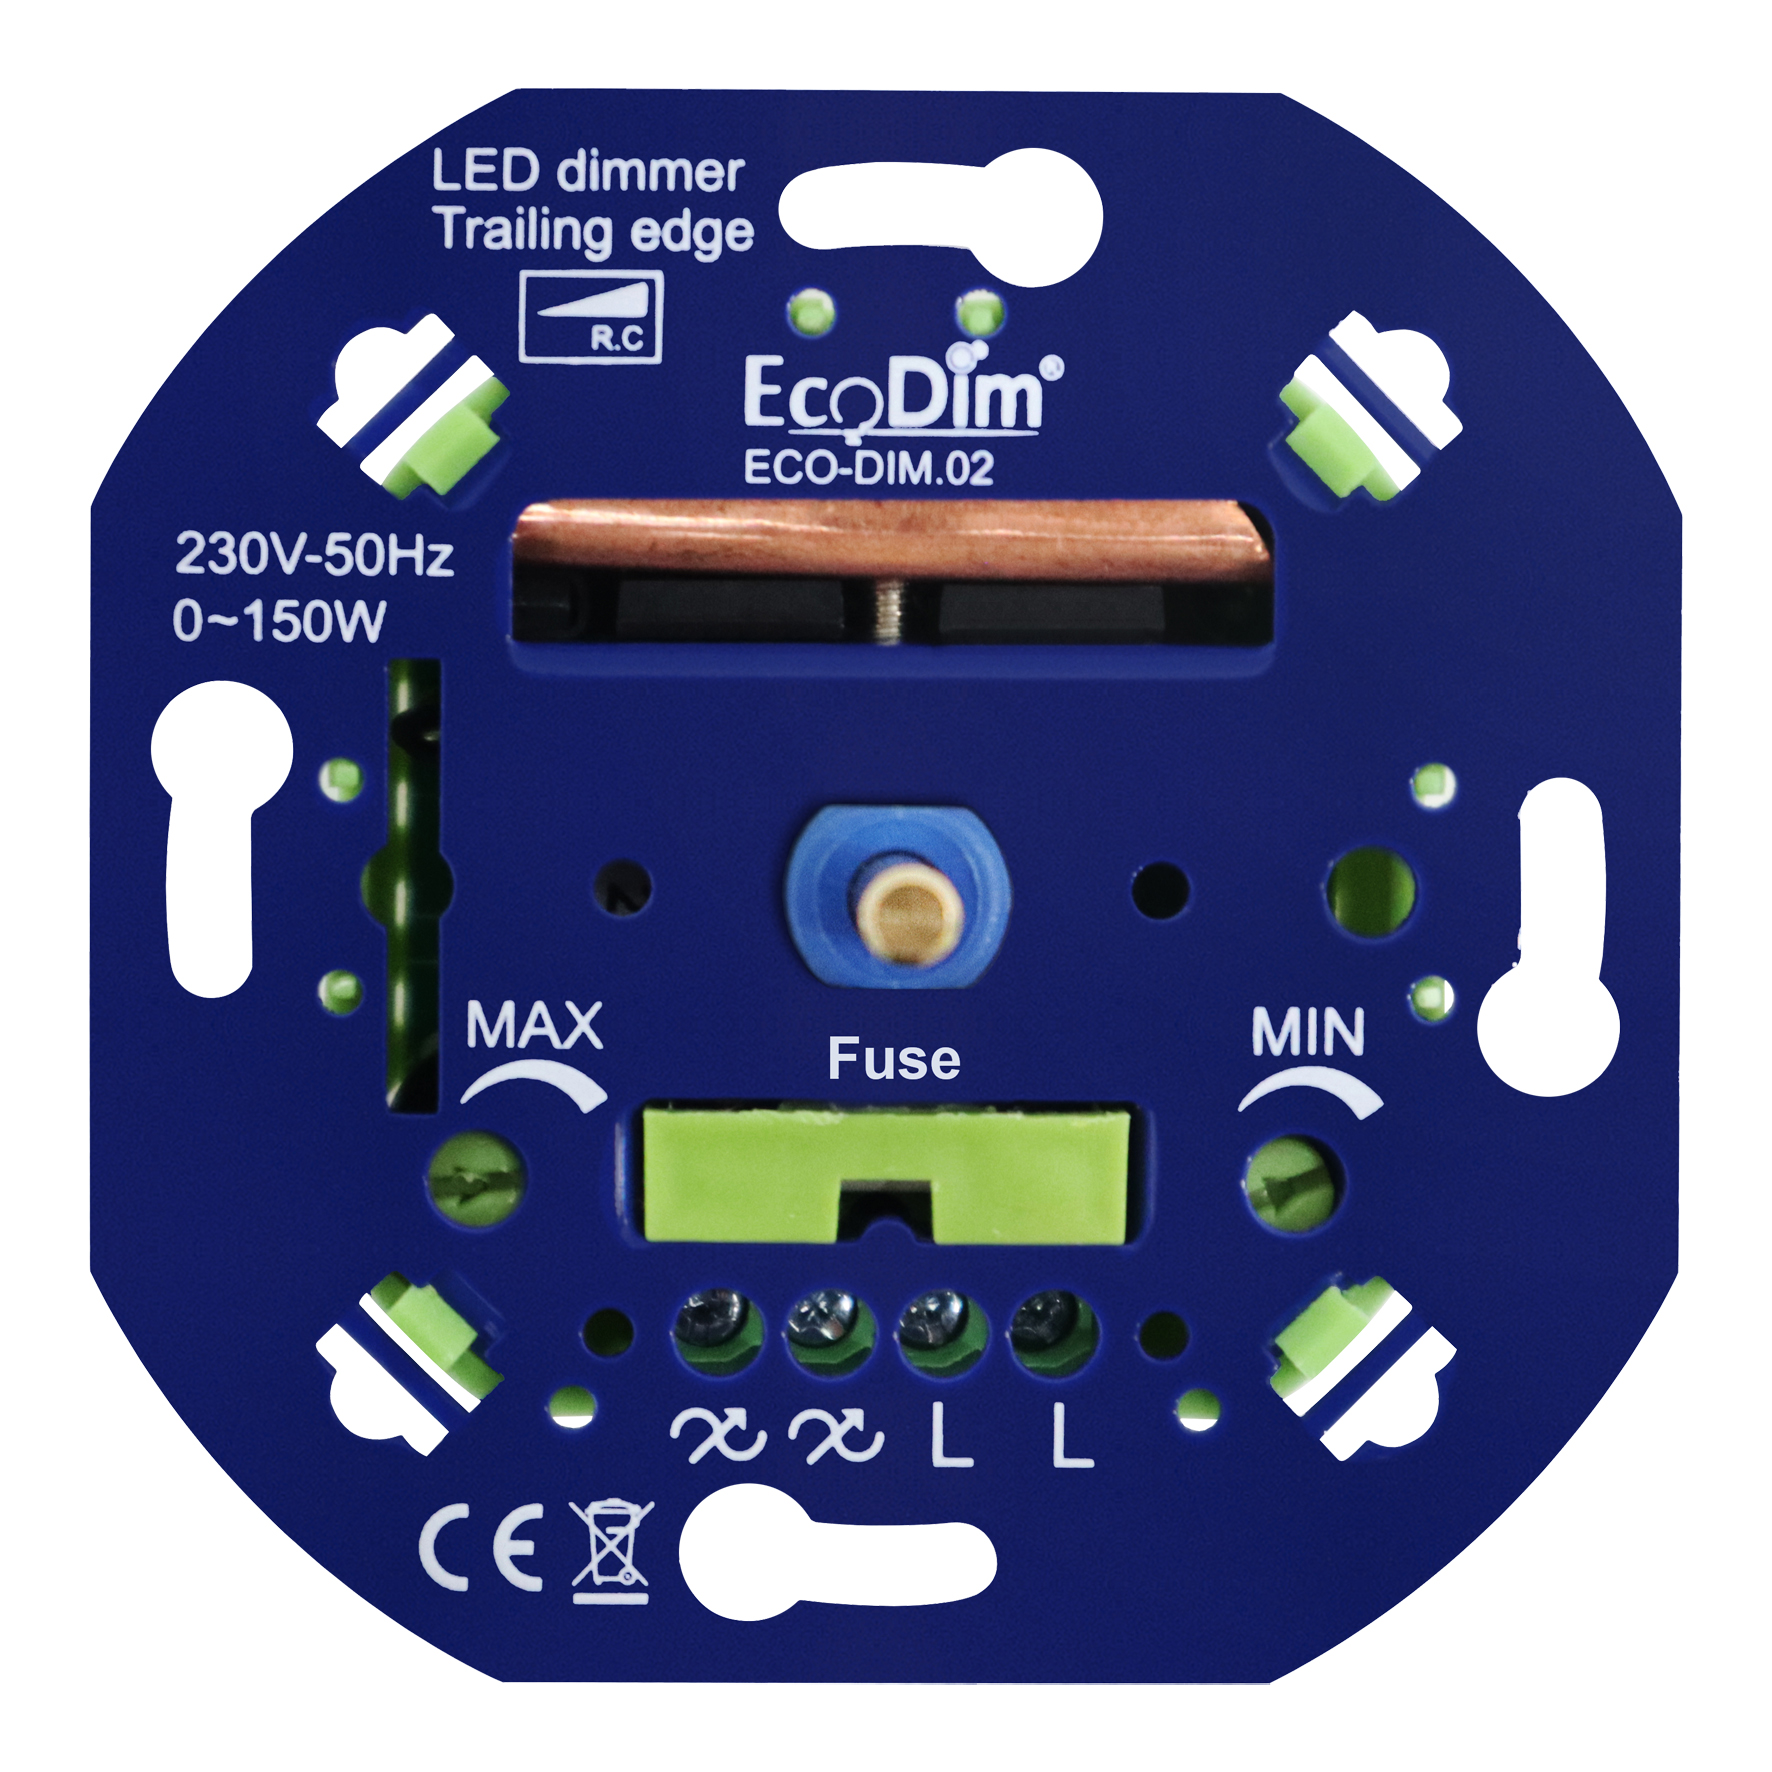 EcoDim ECO-DIM.02 LED Dimmer 0-150W Phase Cut (RC)